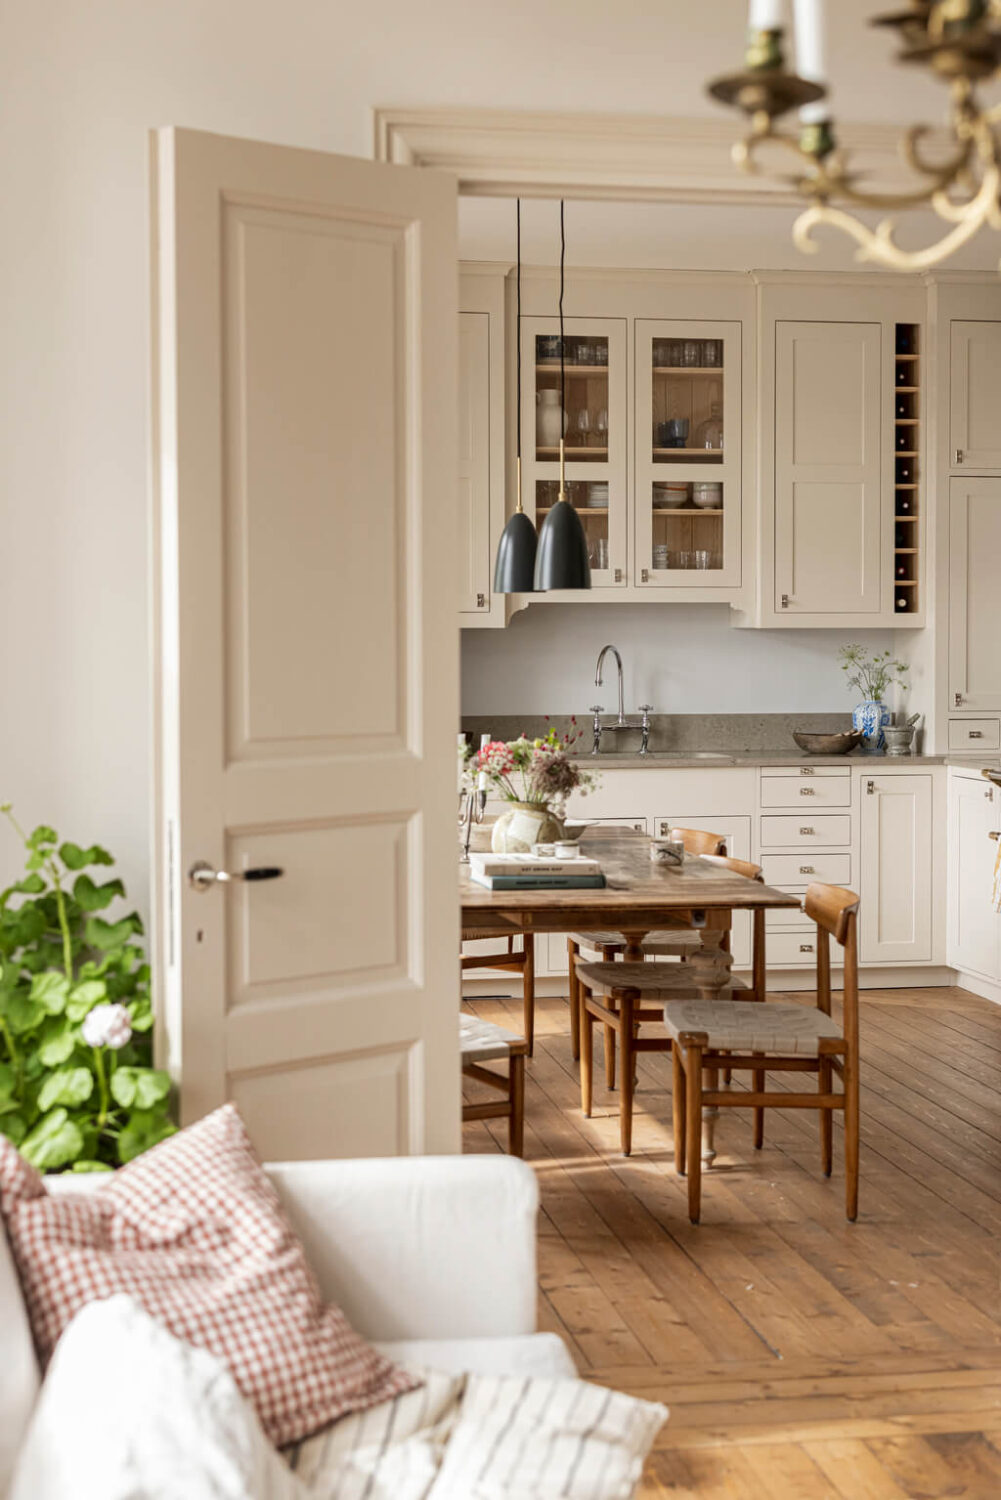 kitchen-living-room-double-doors-wooden-floor-nordroom